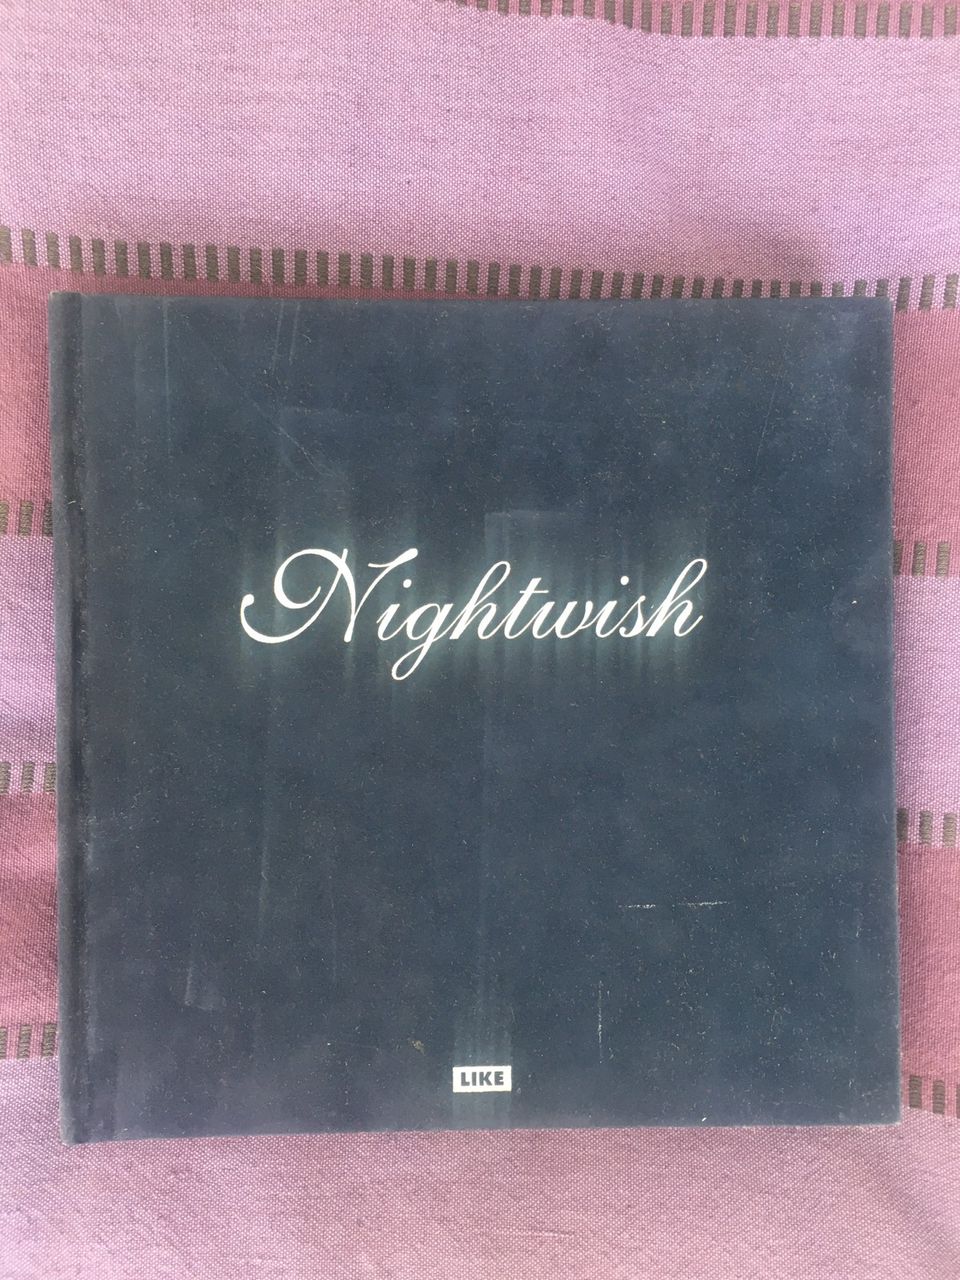 Nightwish kirja samettikannet